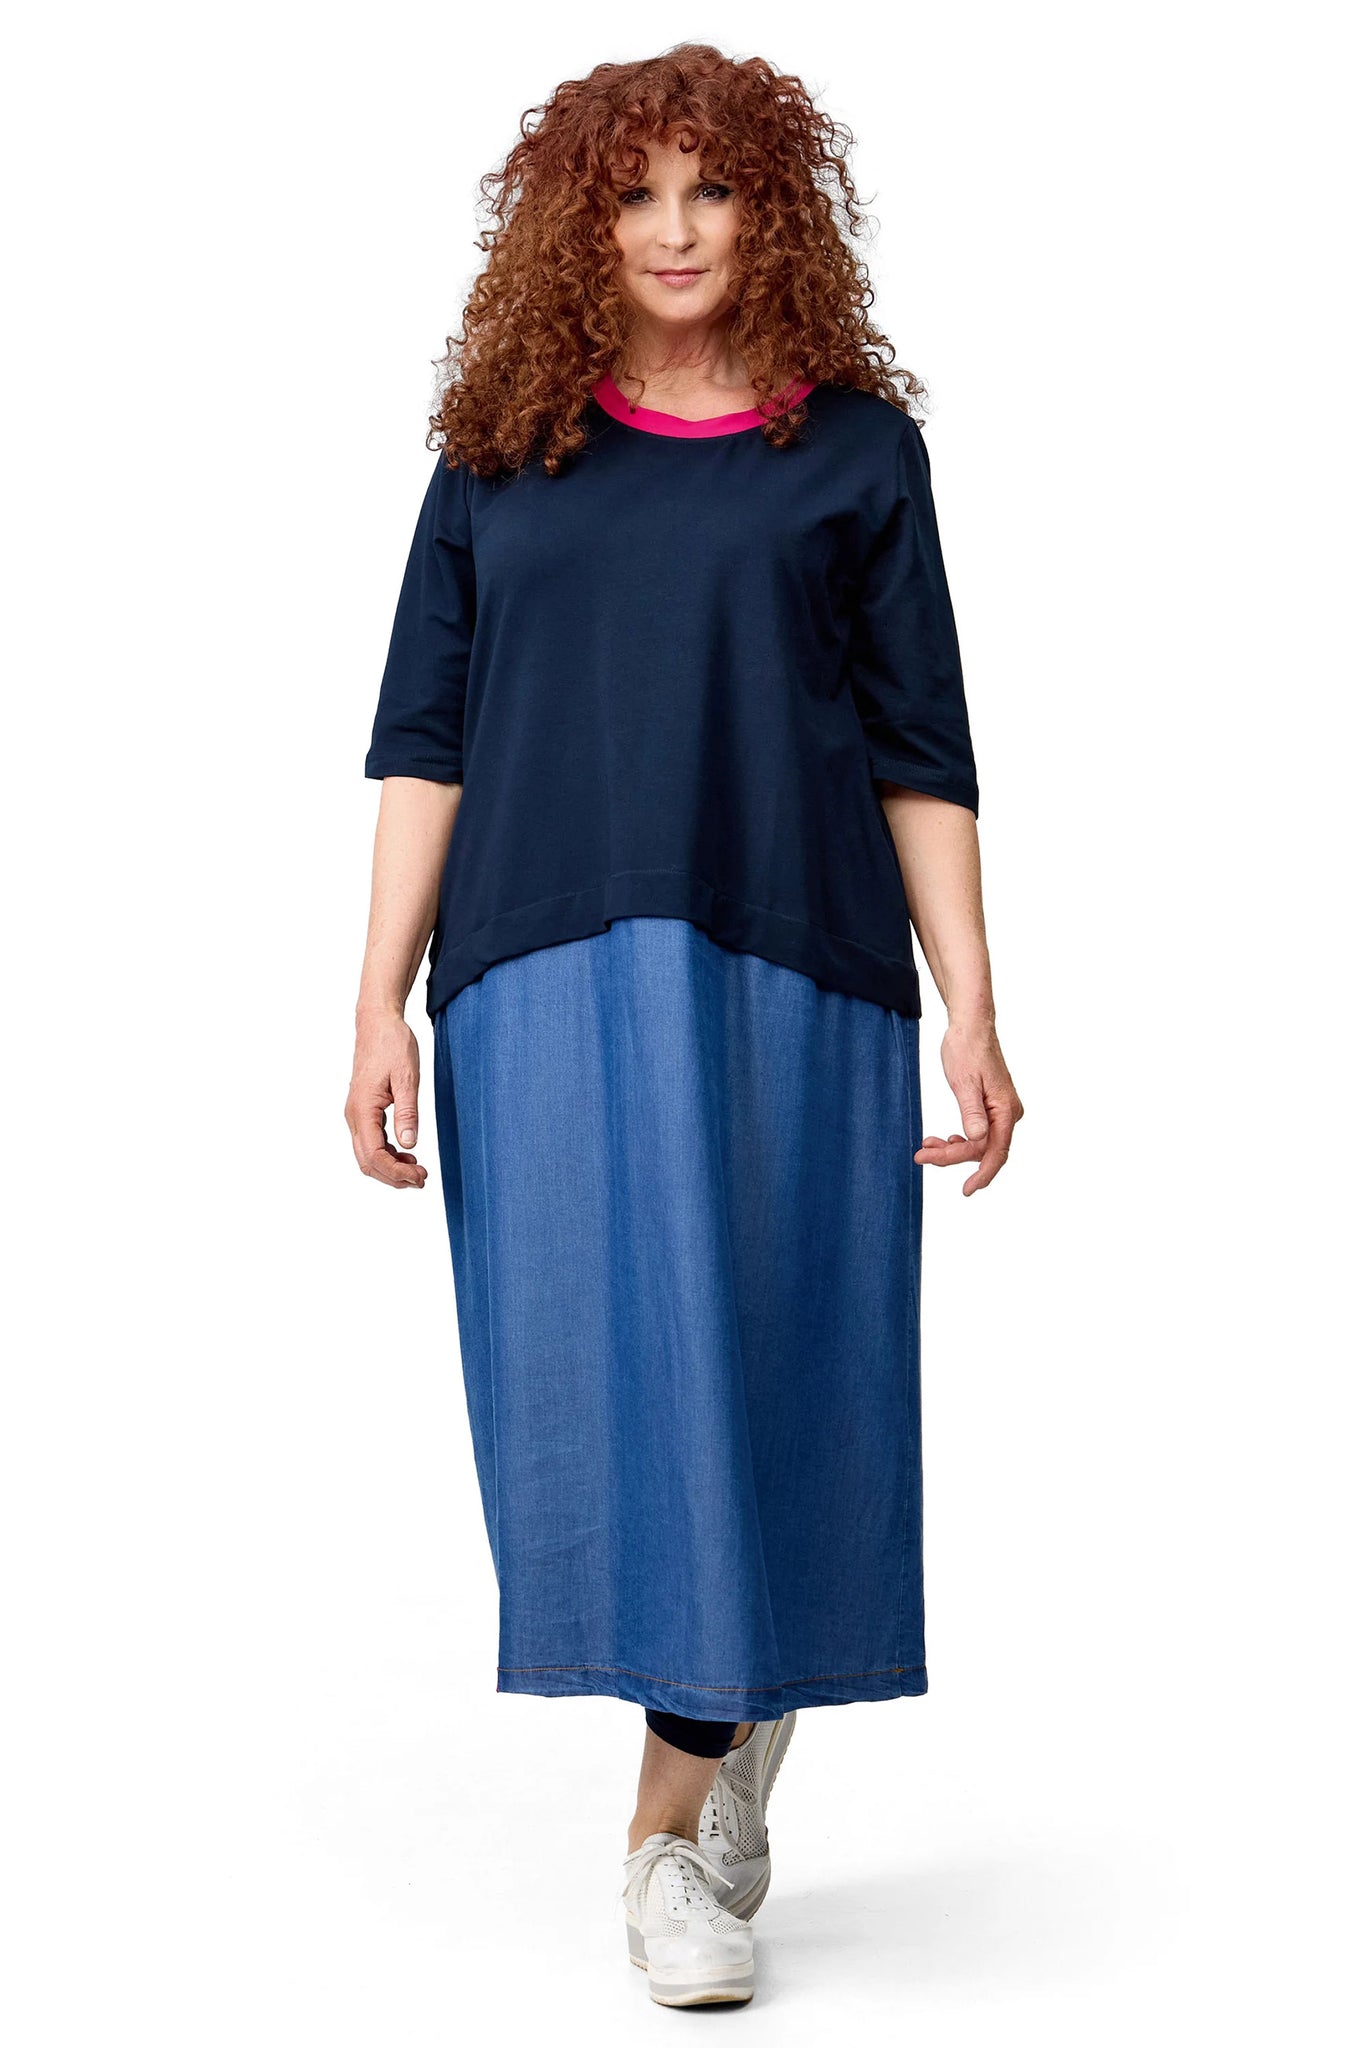 Kleid von Do Your Best aus Tencel in gerader Form, D61701, Jeansblau, Ausgefallen, Modern